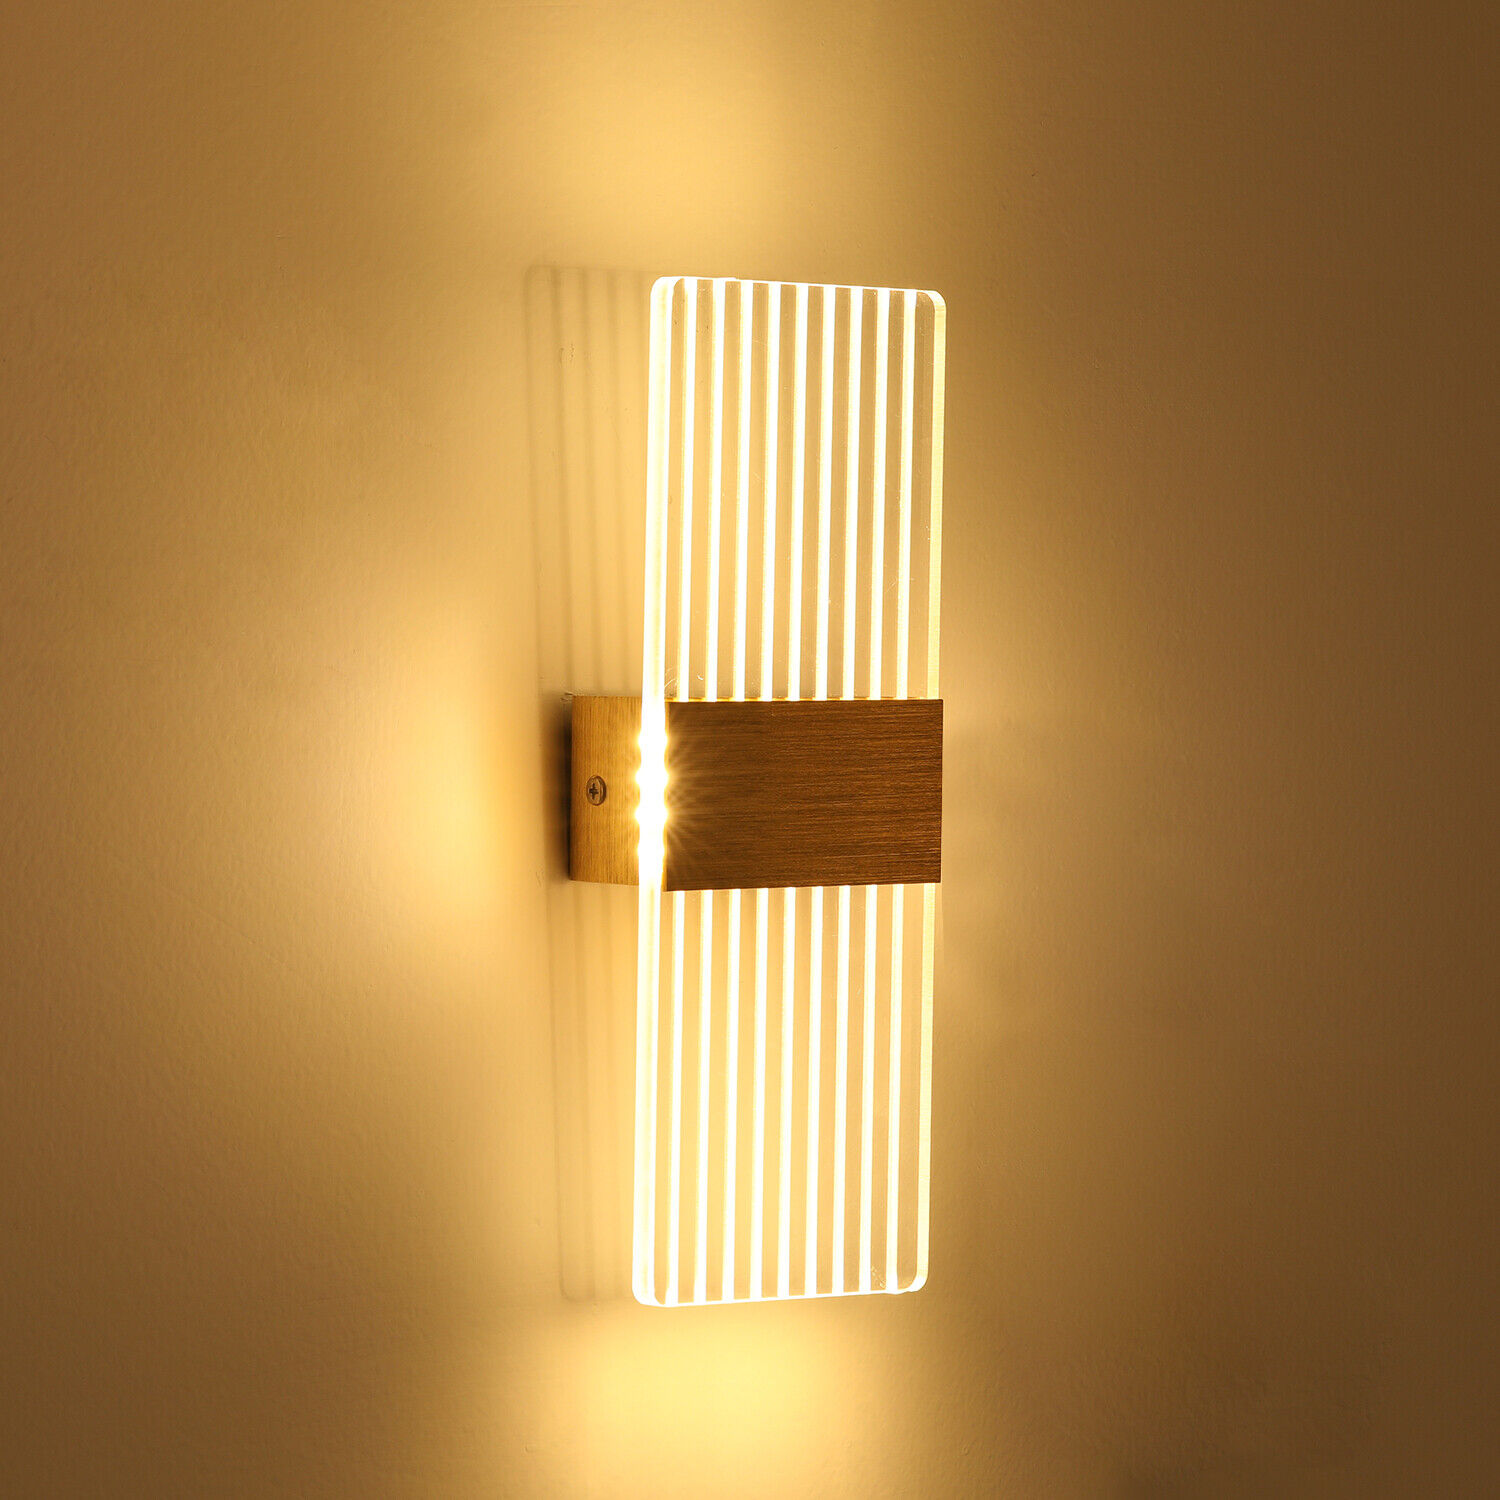 LED Wandleuchte Wandlampe Außen Innen Außenlicht Licht Up Down Leuchten 6W  DHL | eBay